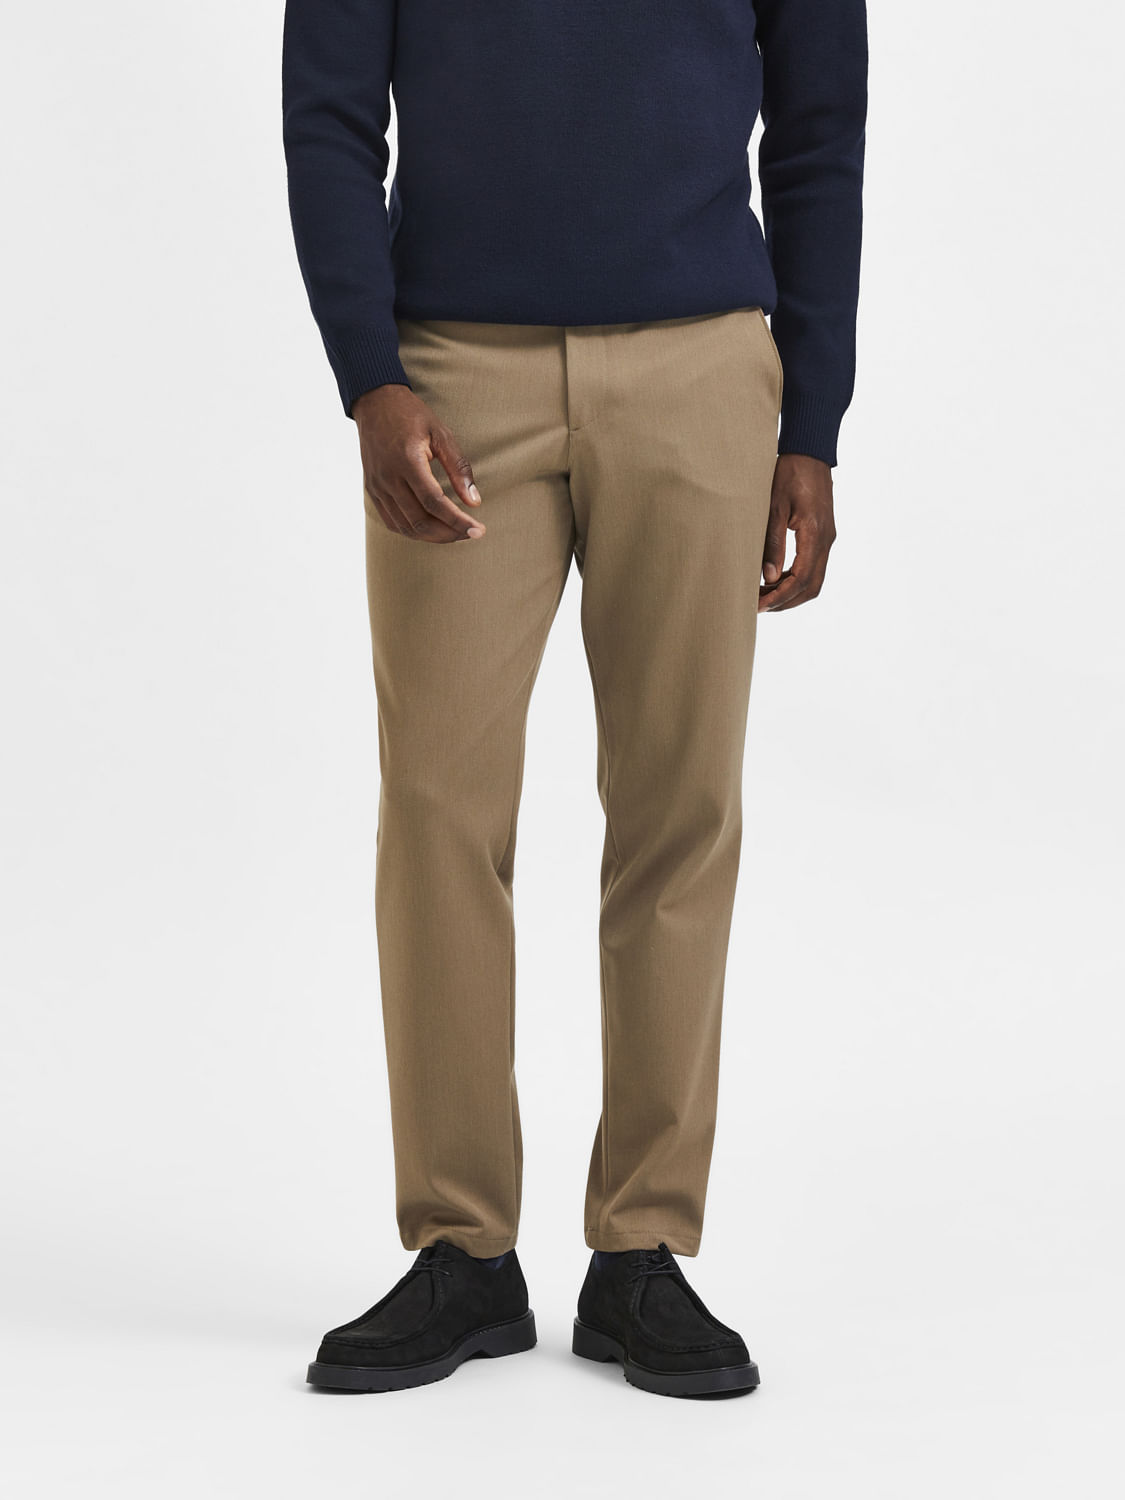 Buy Khaki Trousers & Pants for Men by LEVIS Online | Ajio.com